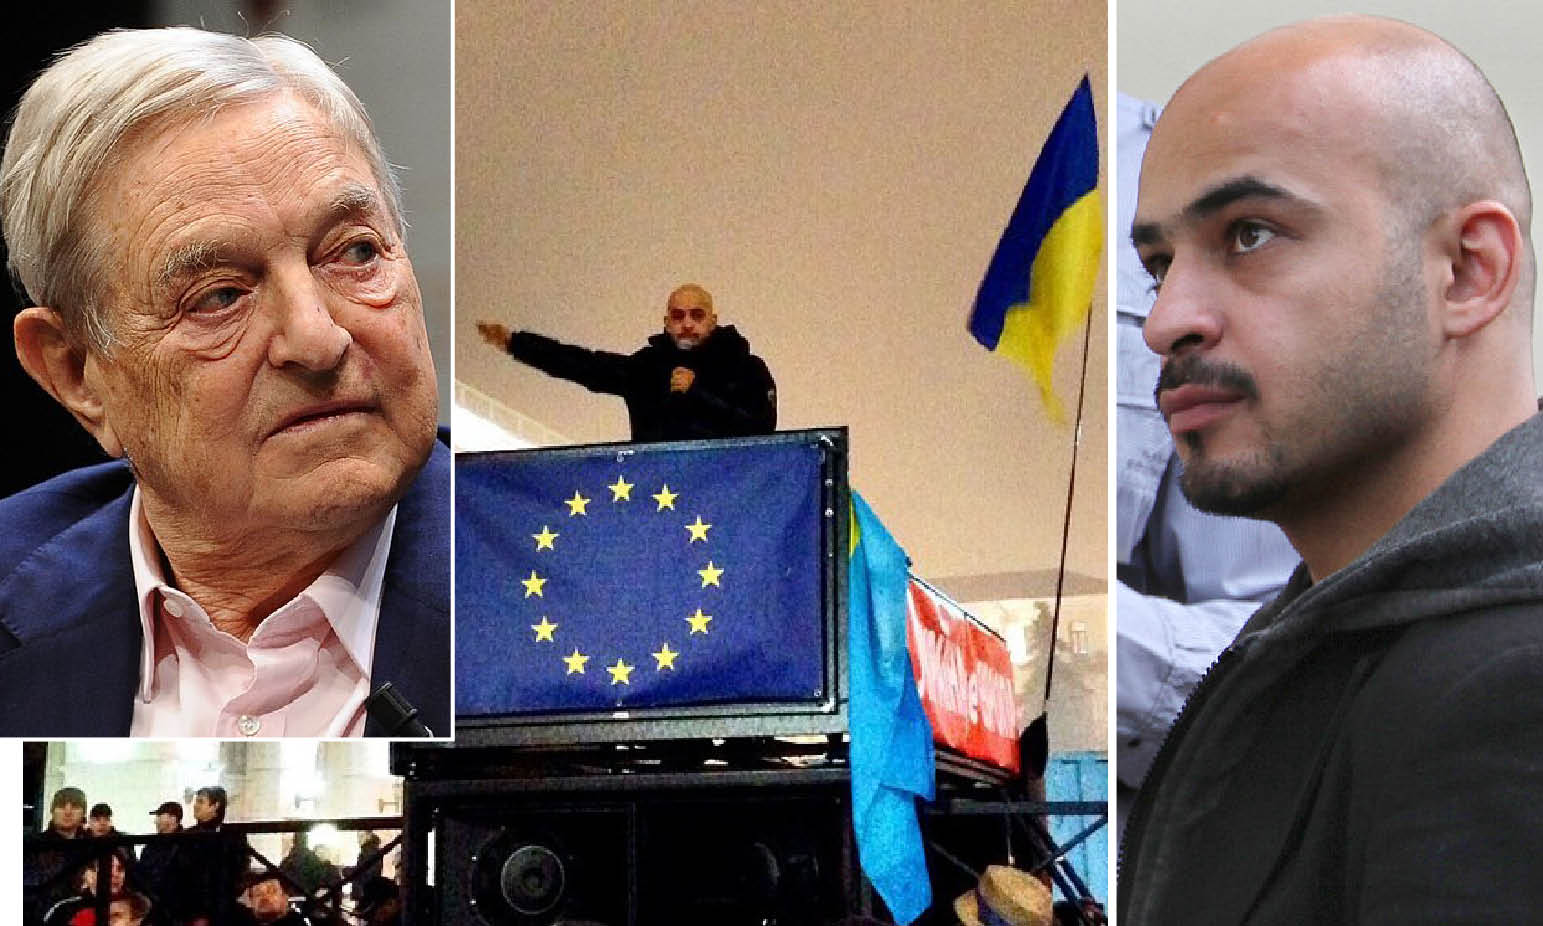 UkraineGate: reporter islamico finanziato da Soros e Usa nel golpe 2014 ora ai vertici dell’industria di armi